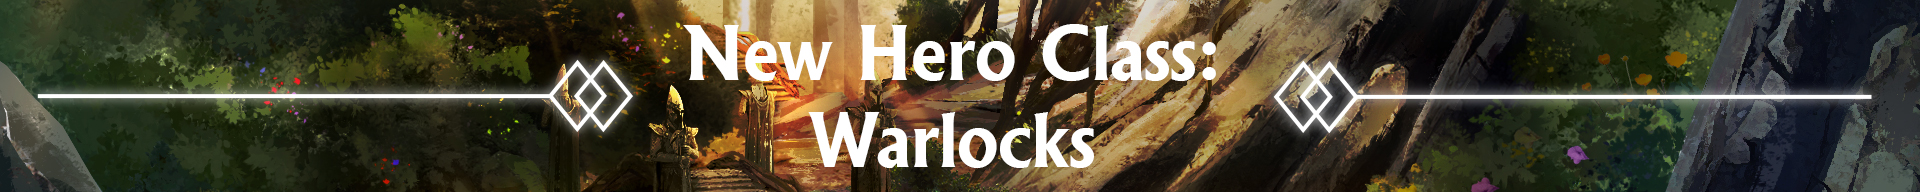 New Hero Class: Warlocks